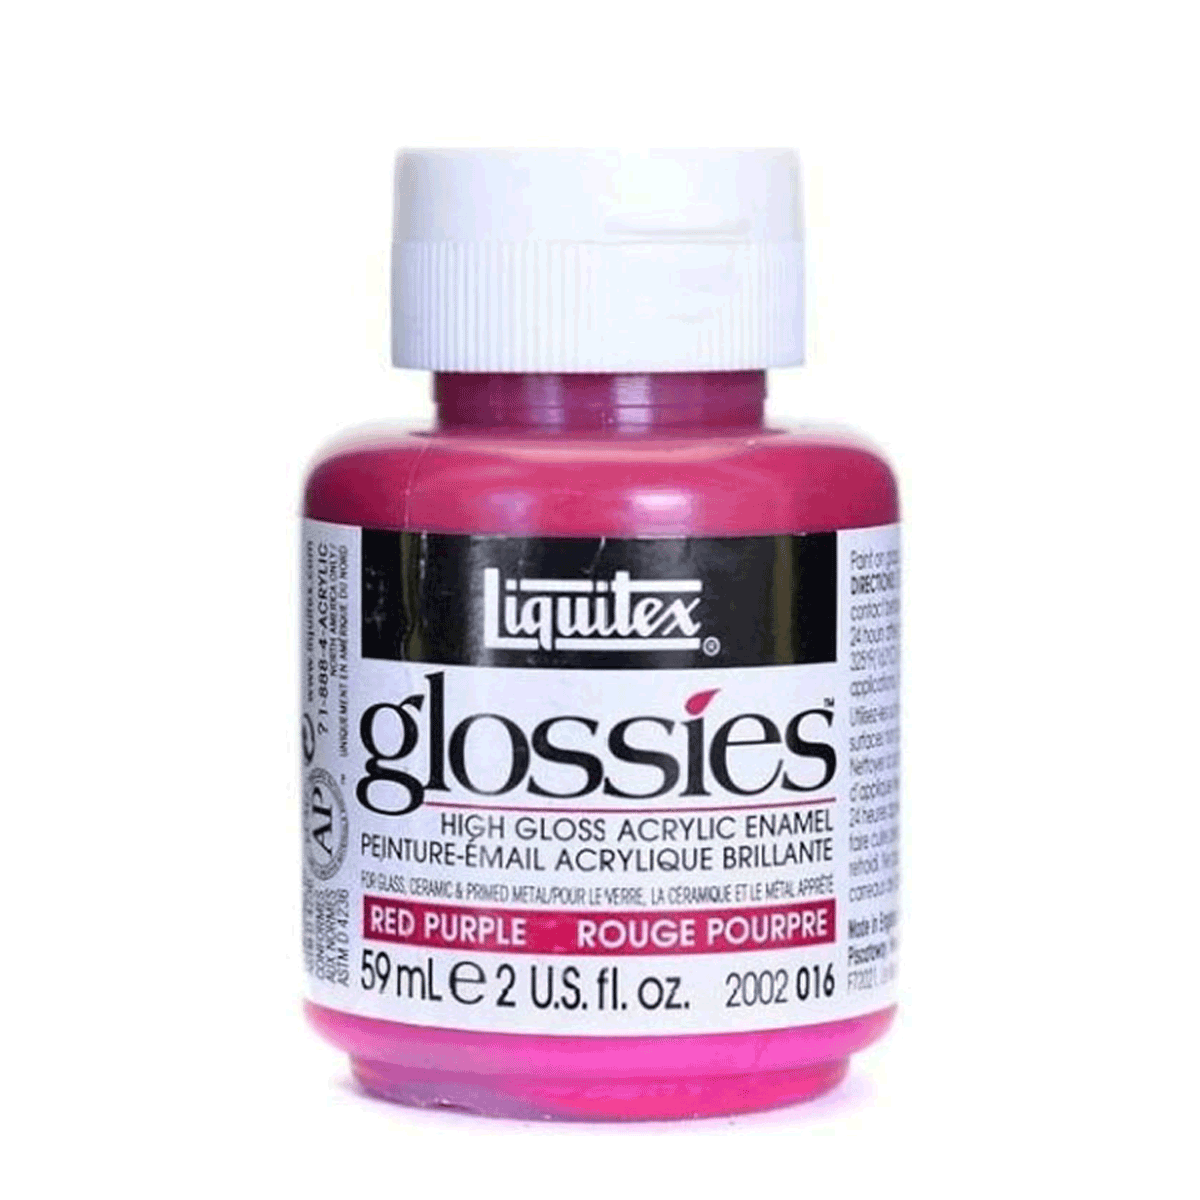 Liquitex Glossies High Gloss Acrylic Enamel - Red Purple 2-oz. (59ml)